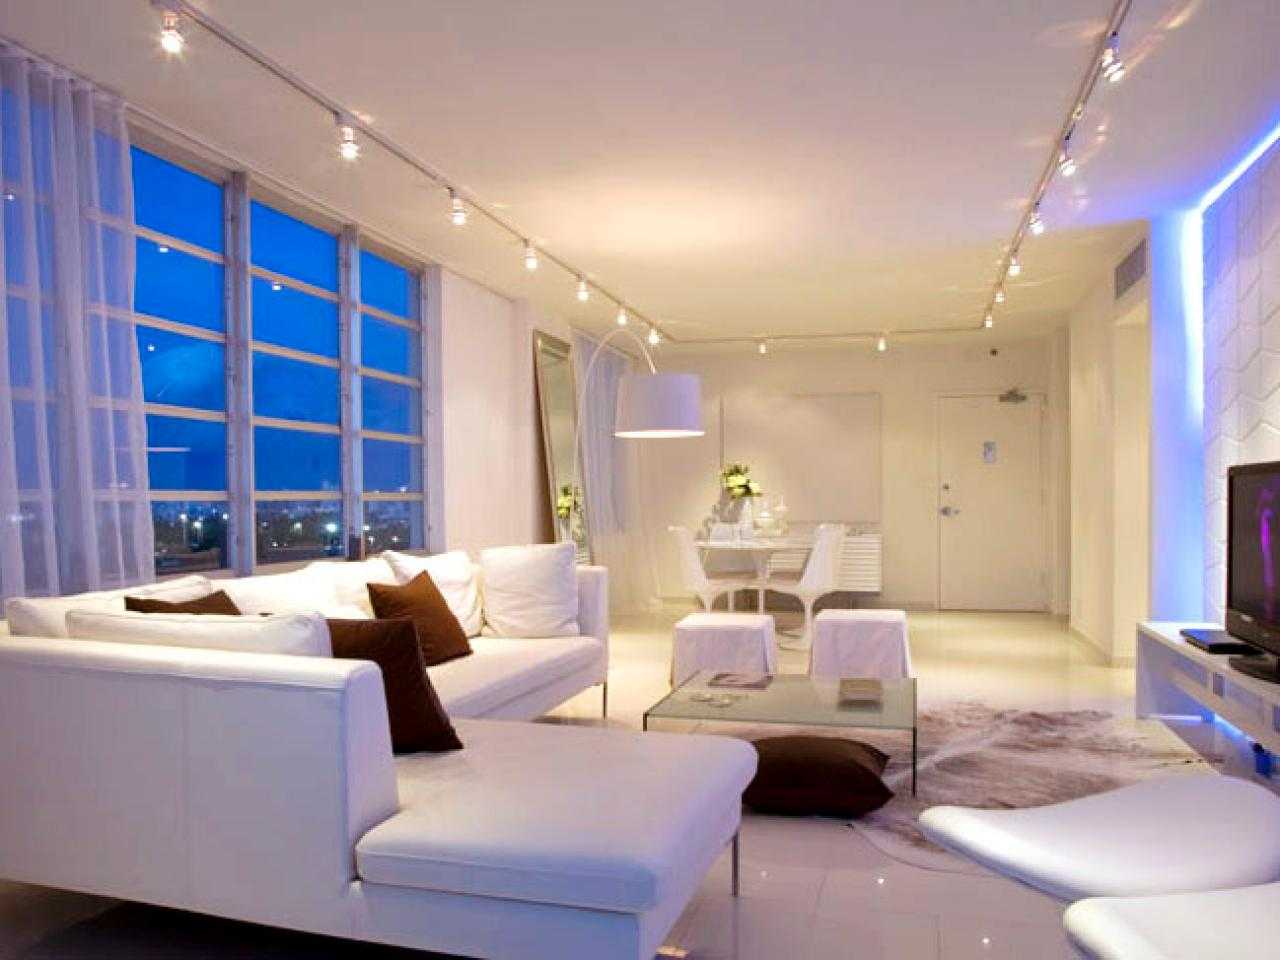 Светодиодная подсветка своими руками - как сделать в квартире, диодное освещение на кухне, для лестницы, мебели, штор и цветов, монтаж led панелей +фото